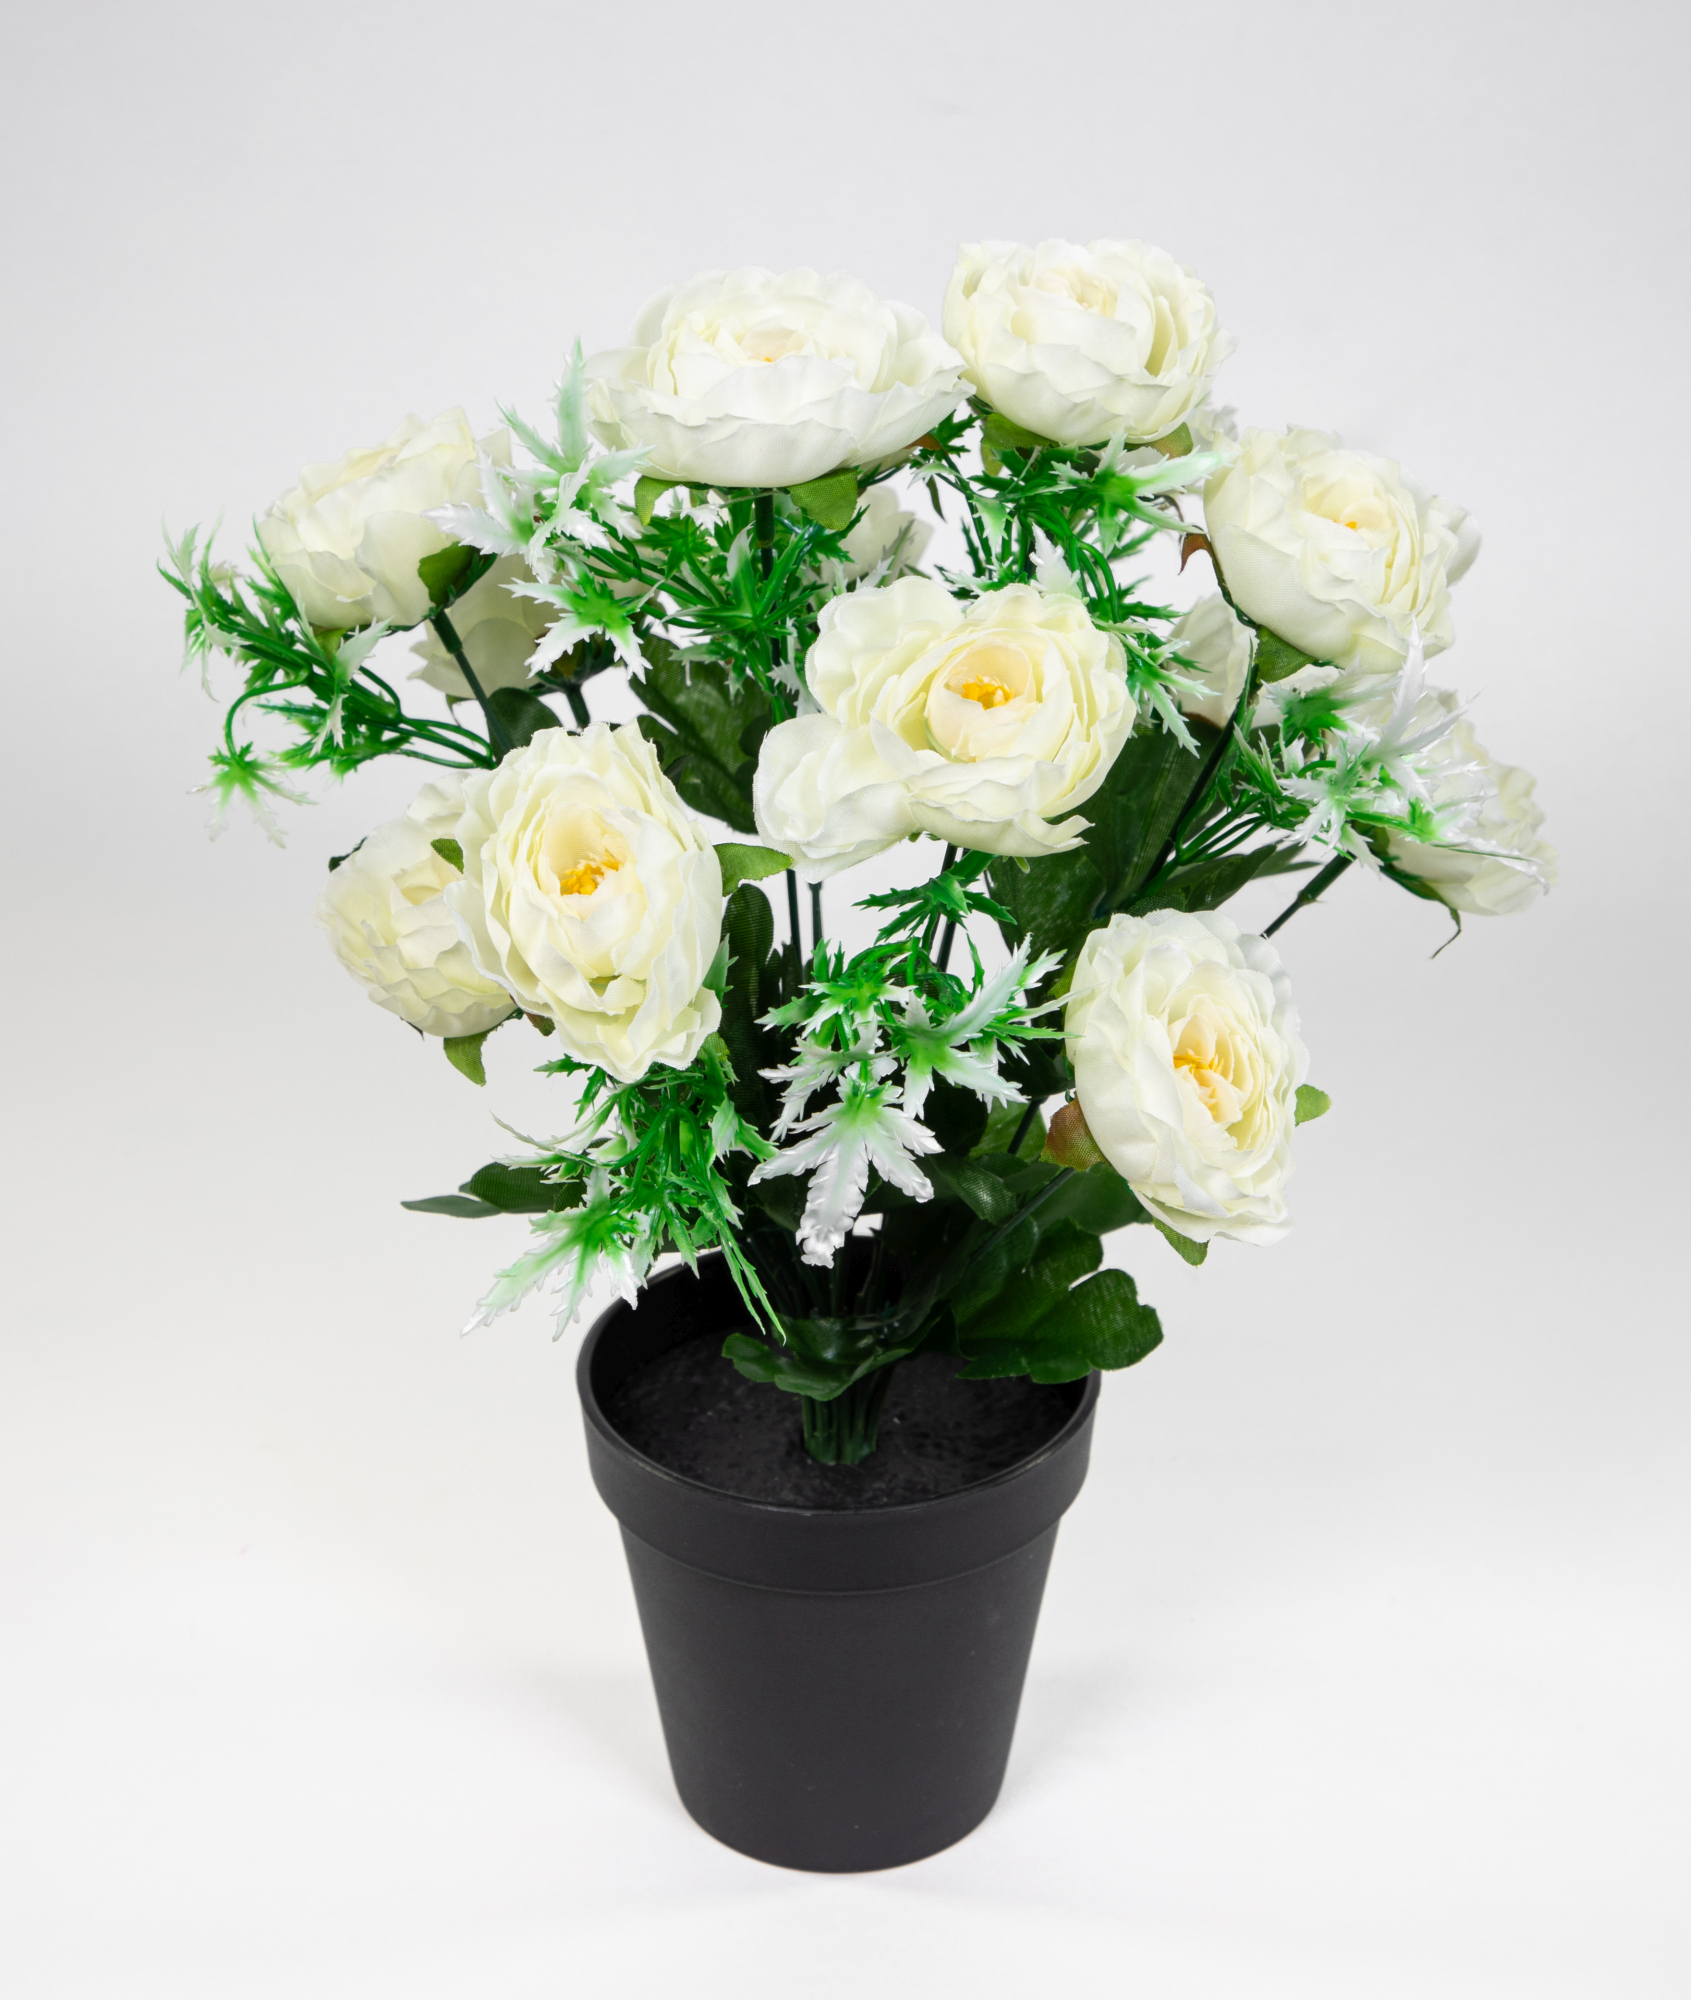 Ranunkelbusch 34cm weiß im Topf JA Kunstpflanzen Kunstblumen künstliche Ranunkel  Blumen